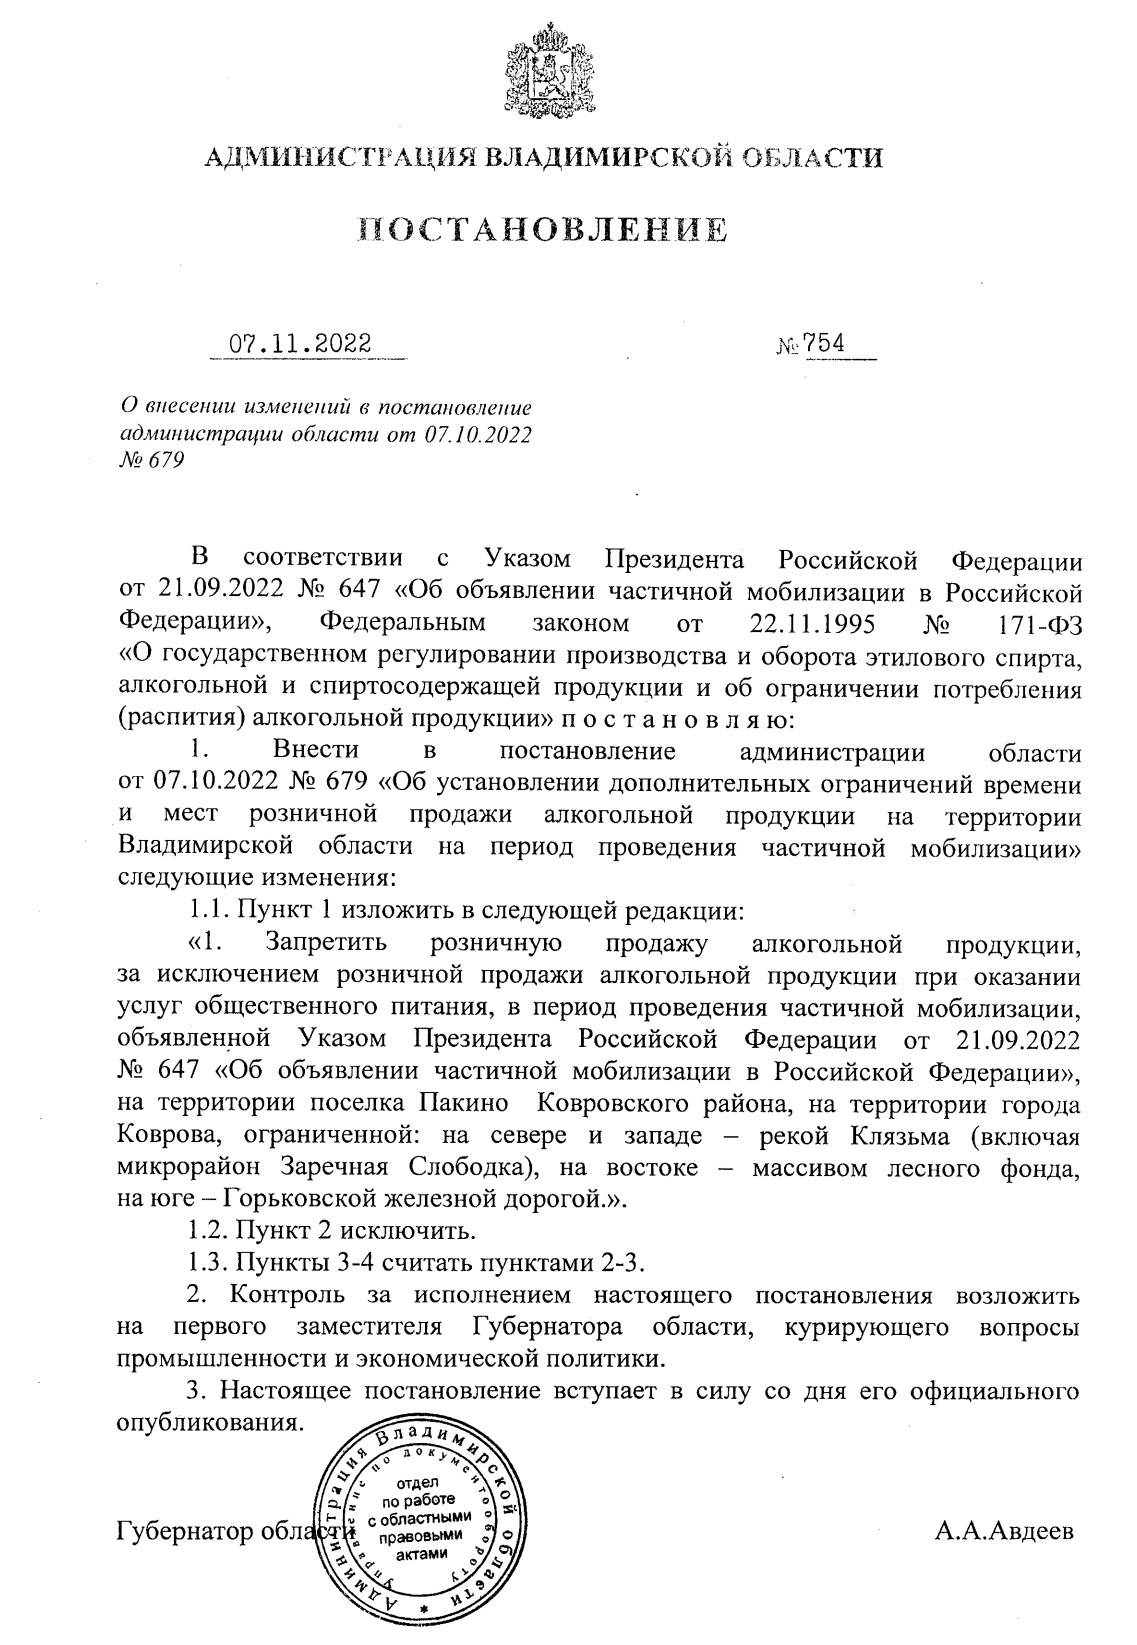 изменения в Постановление№ 754 от 7.10.2022 г